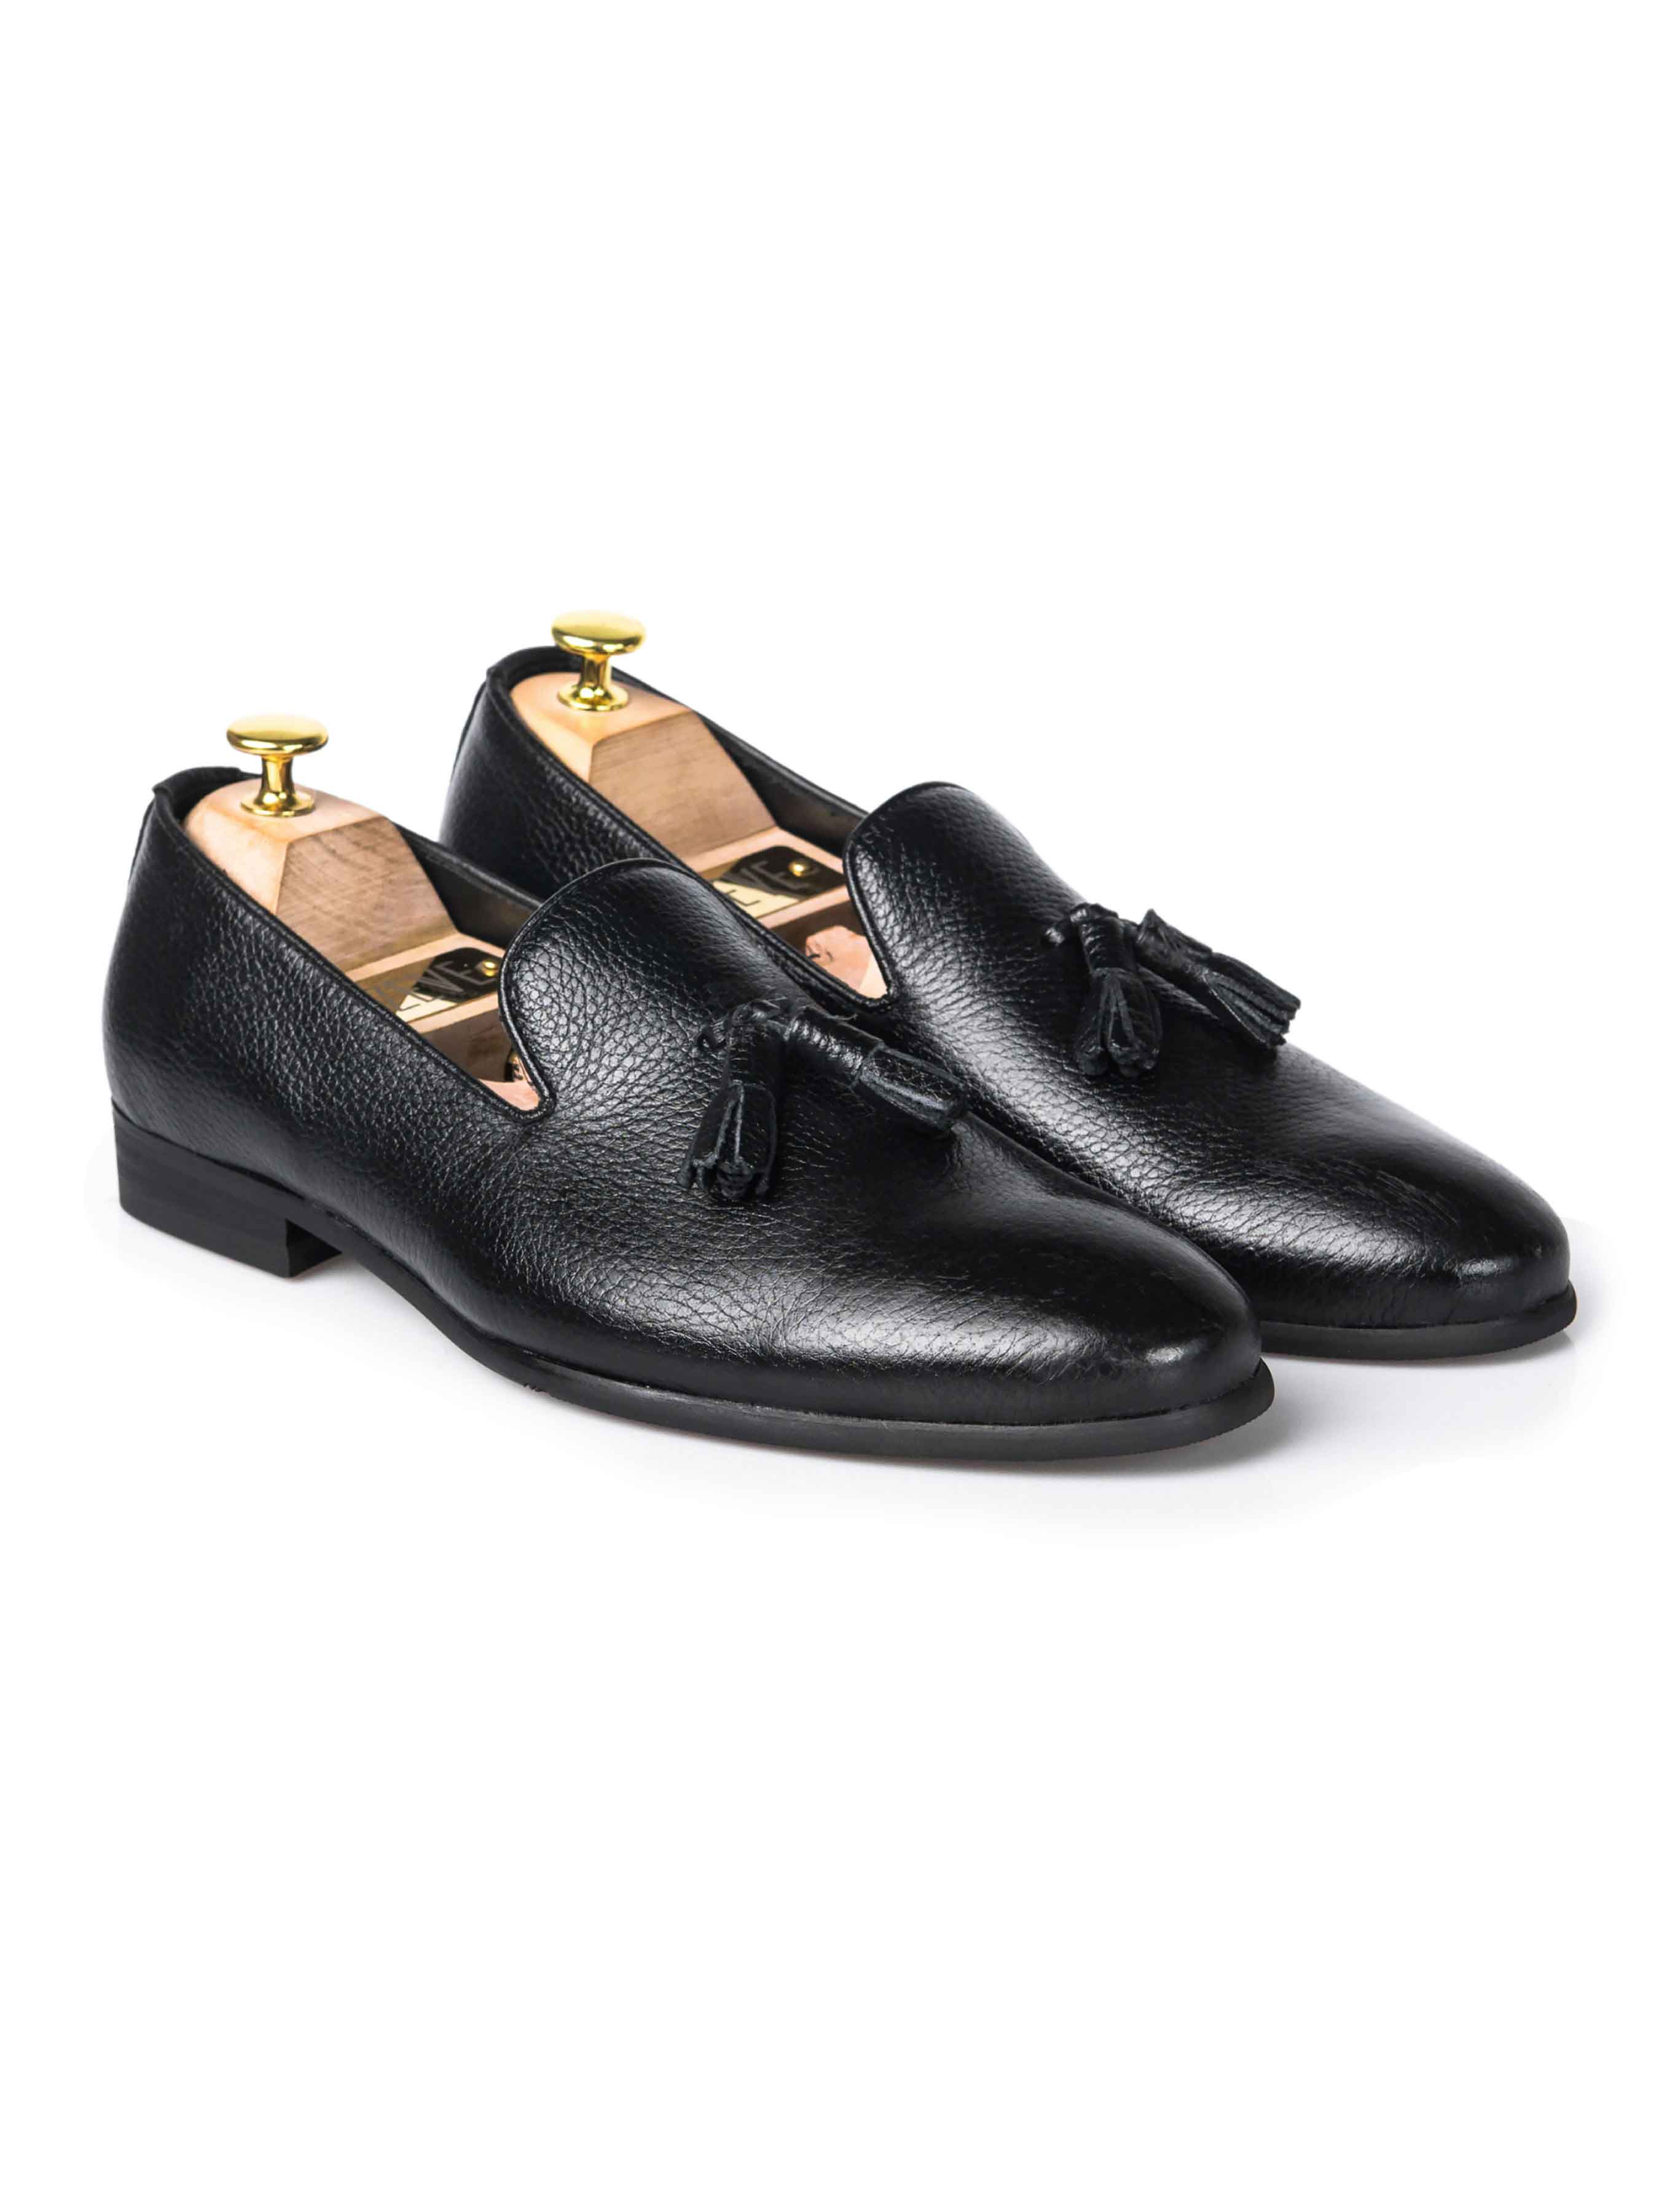 Loafer Slipper - Black Pebble Grain Leather